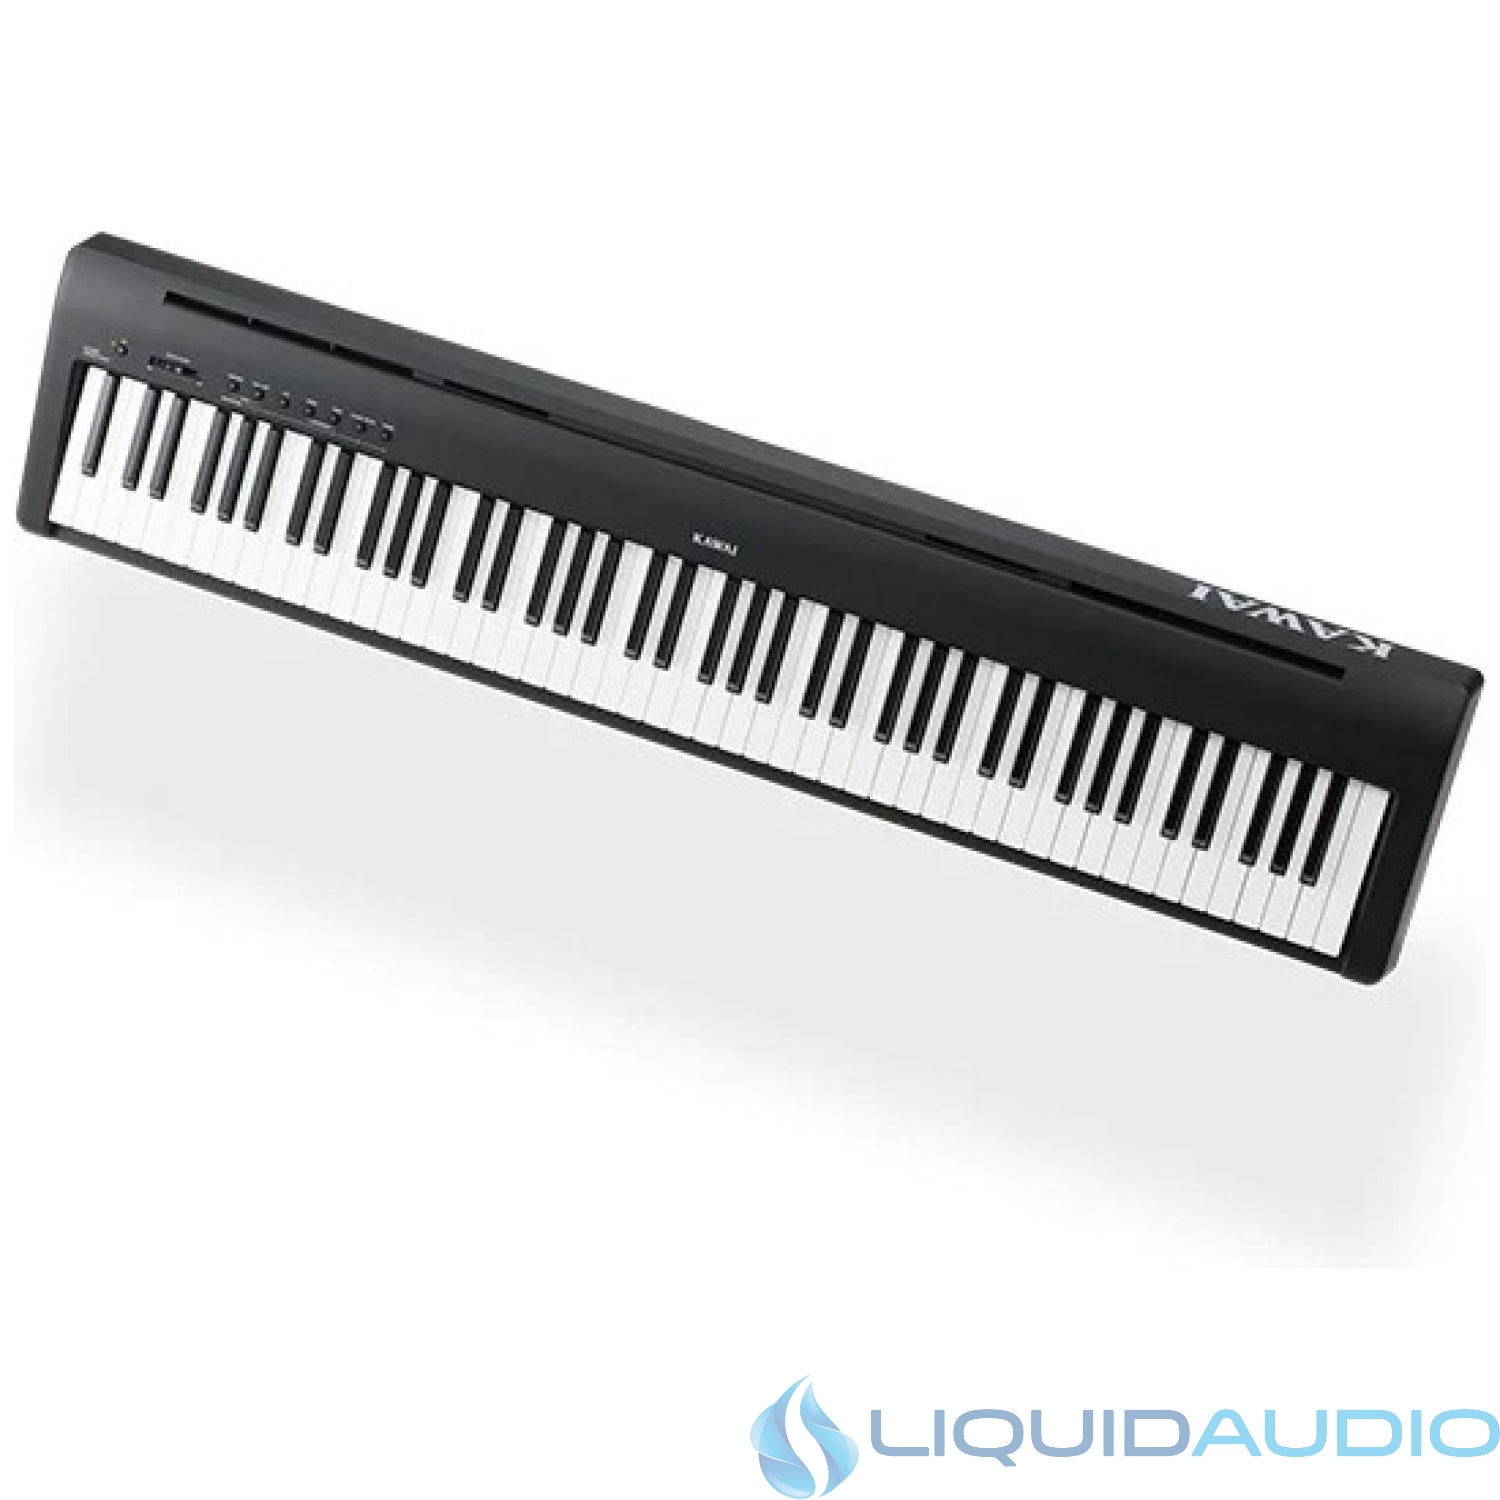 Kawai ES110 Digital Piano with Speakers